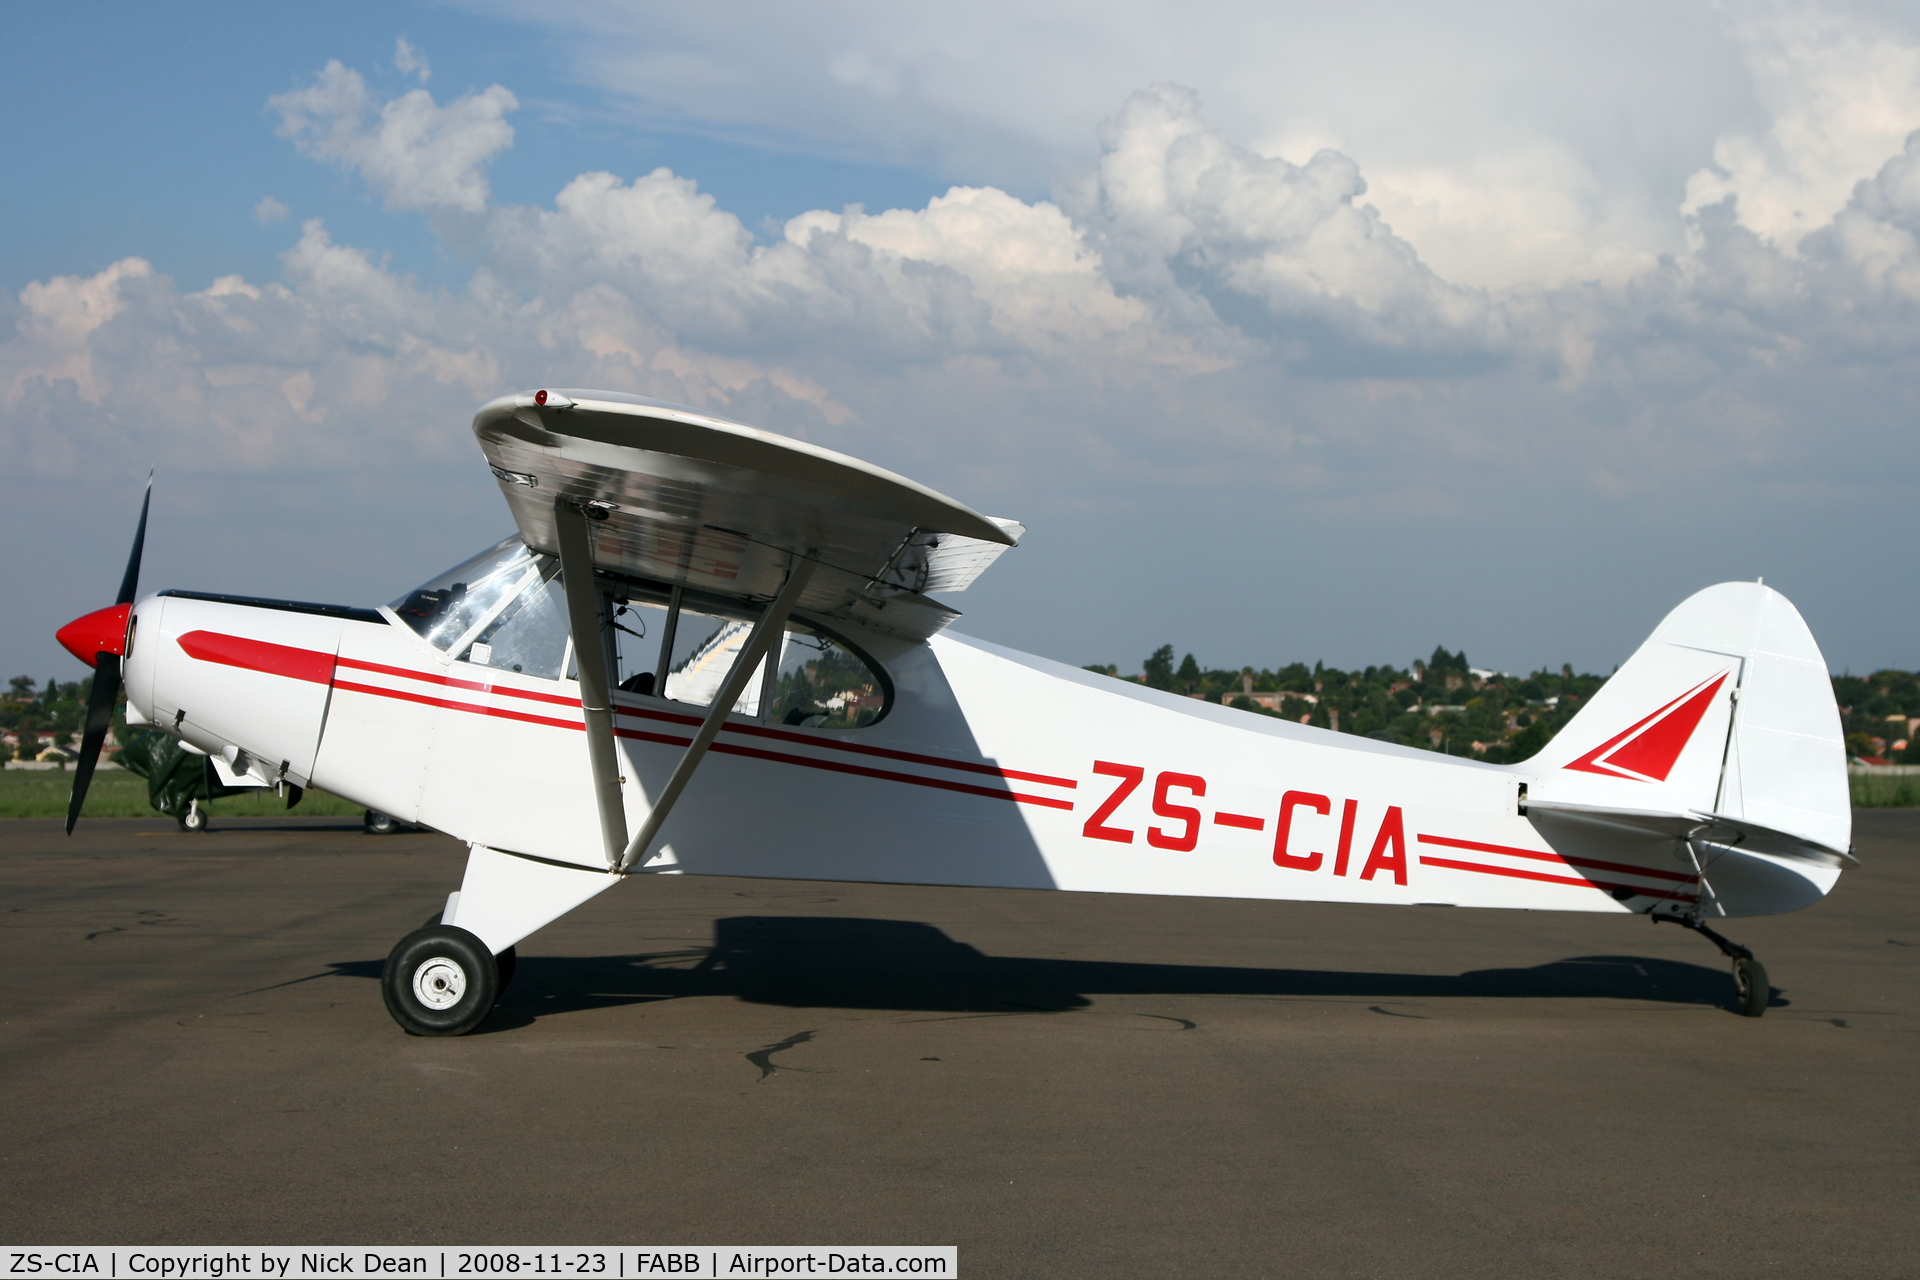 ZS-CIA, Piper PA-18-150 Super Cub Super Cub C/N 18-6128, FABB Brakpan South Africa